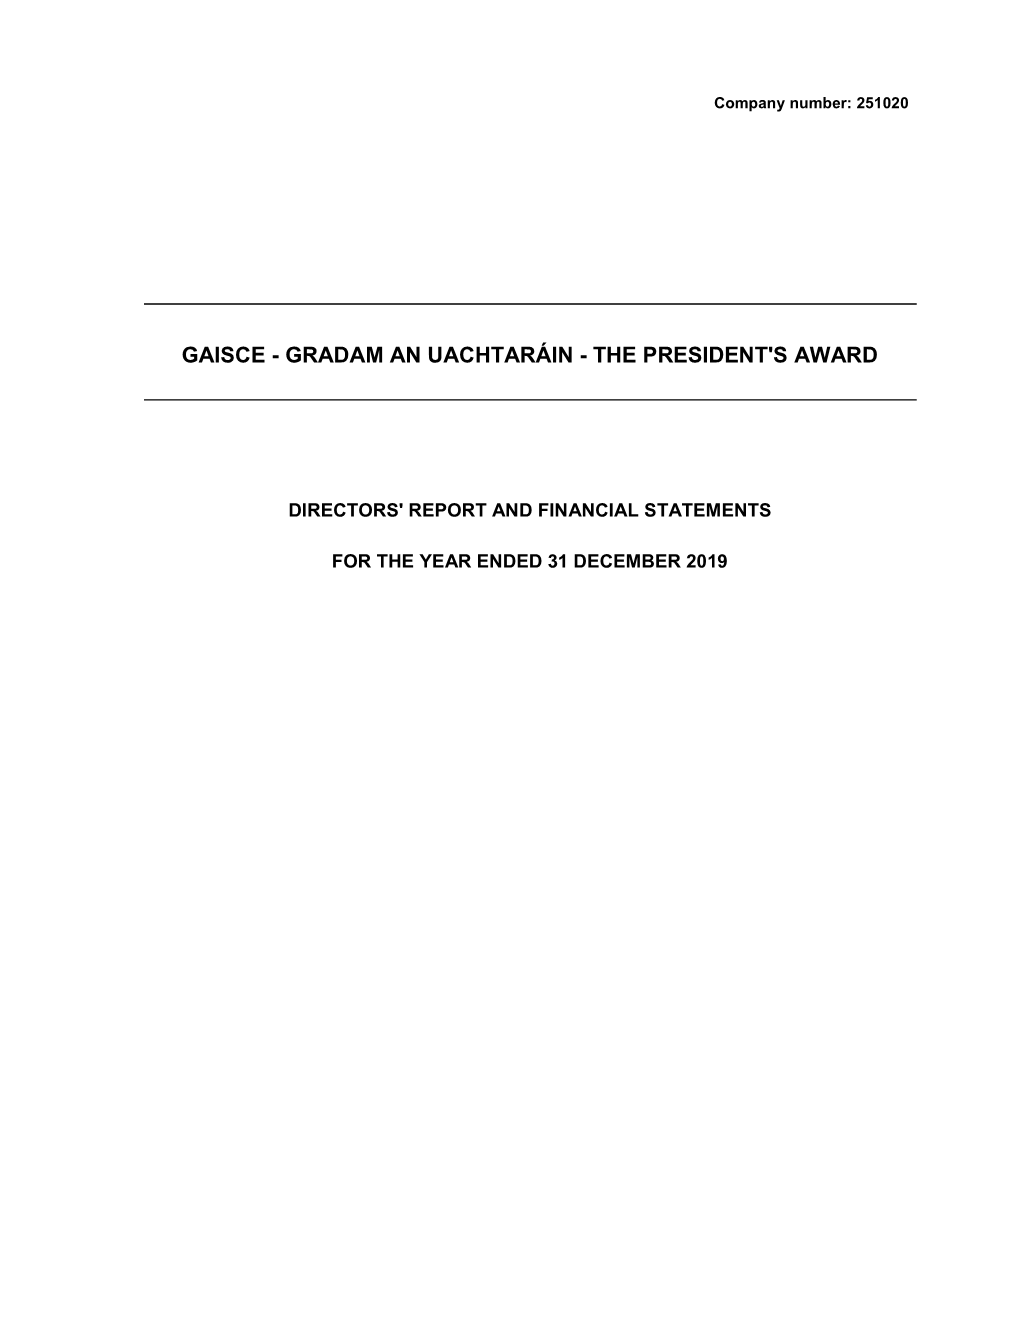 Gradam an Uachtaráin - the President's Award